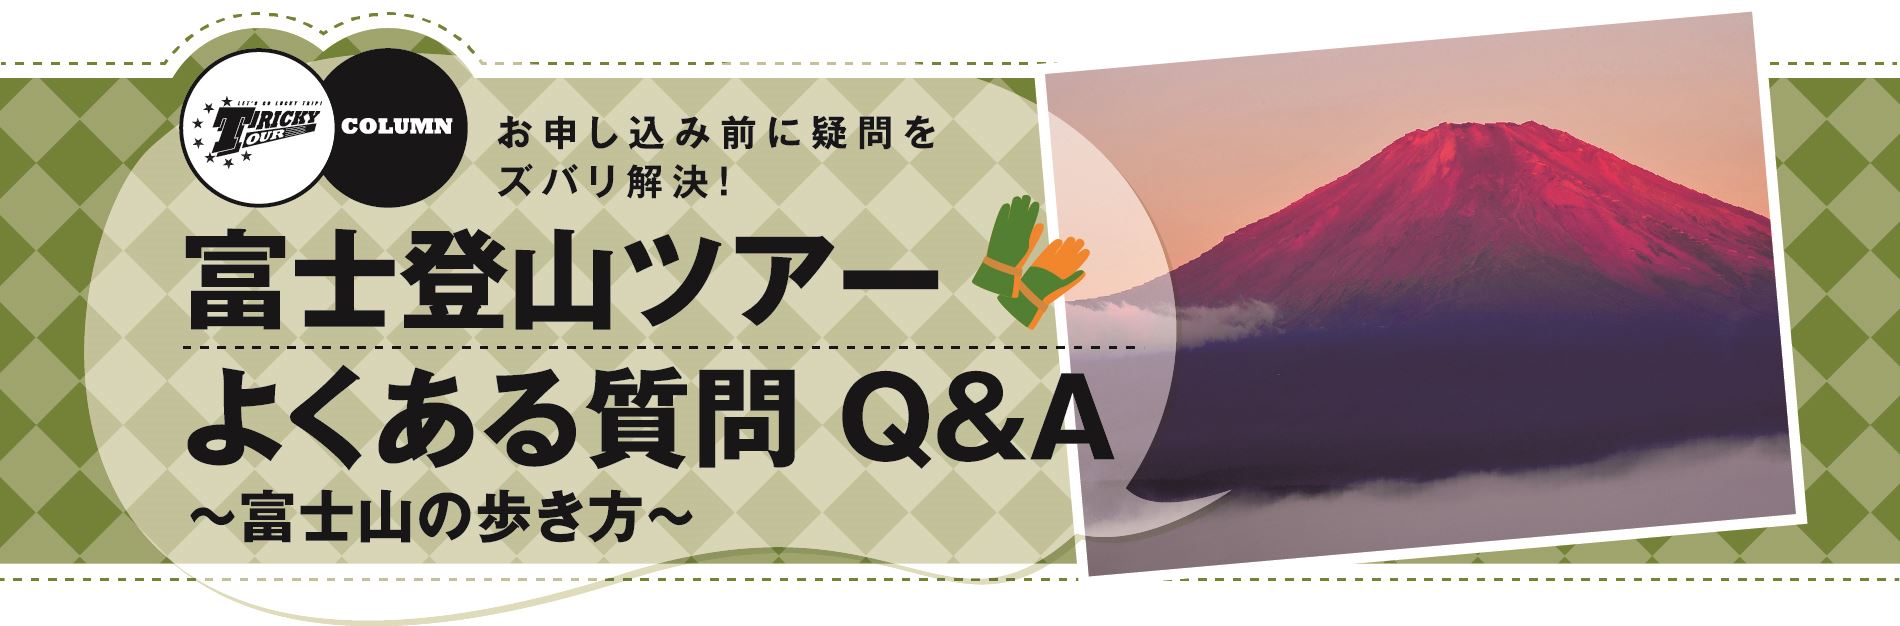 富士登山ツアーよくある質問 Q&A